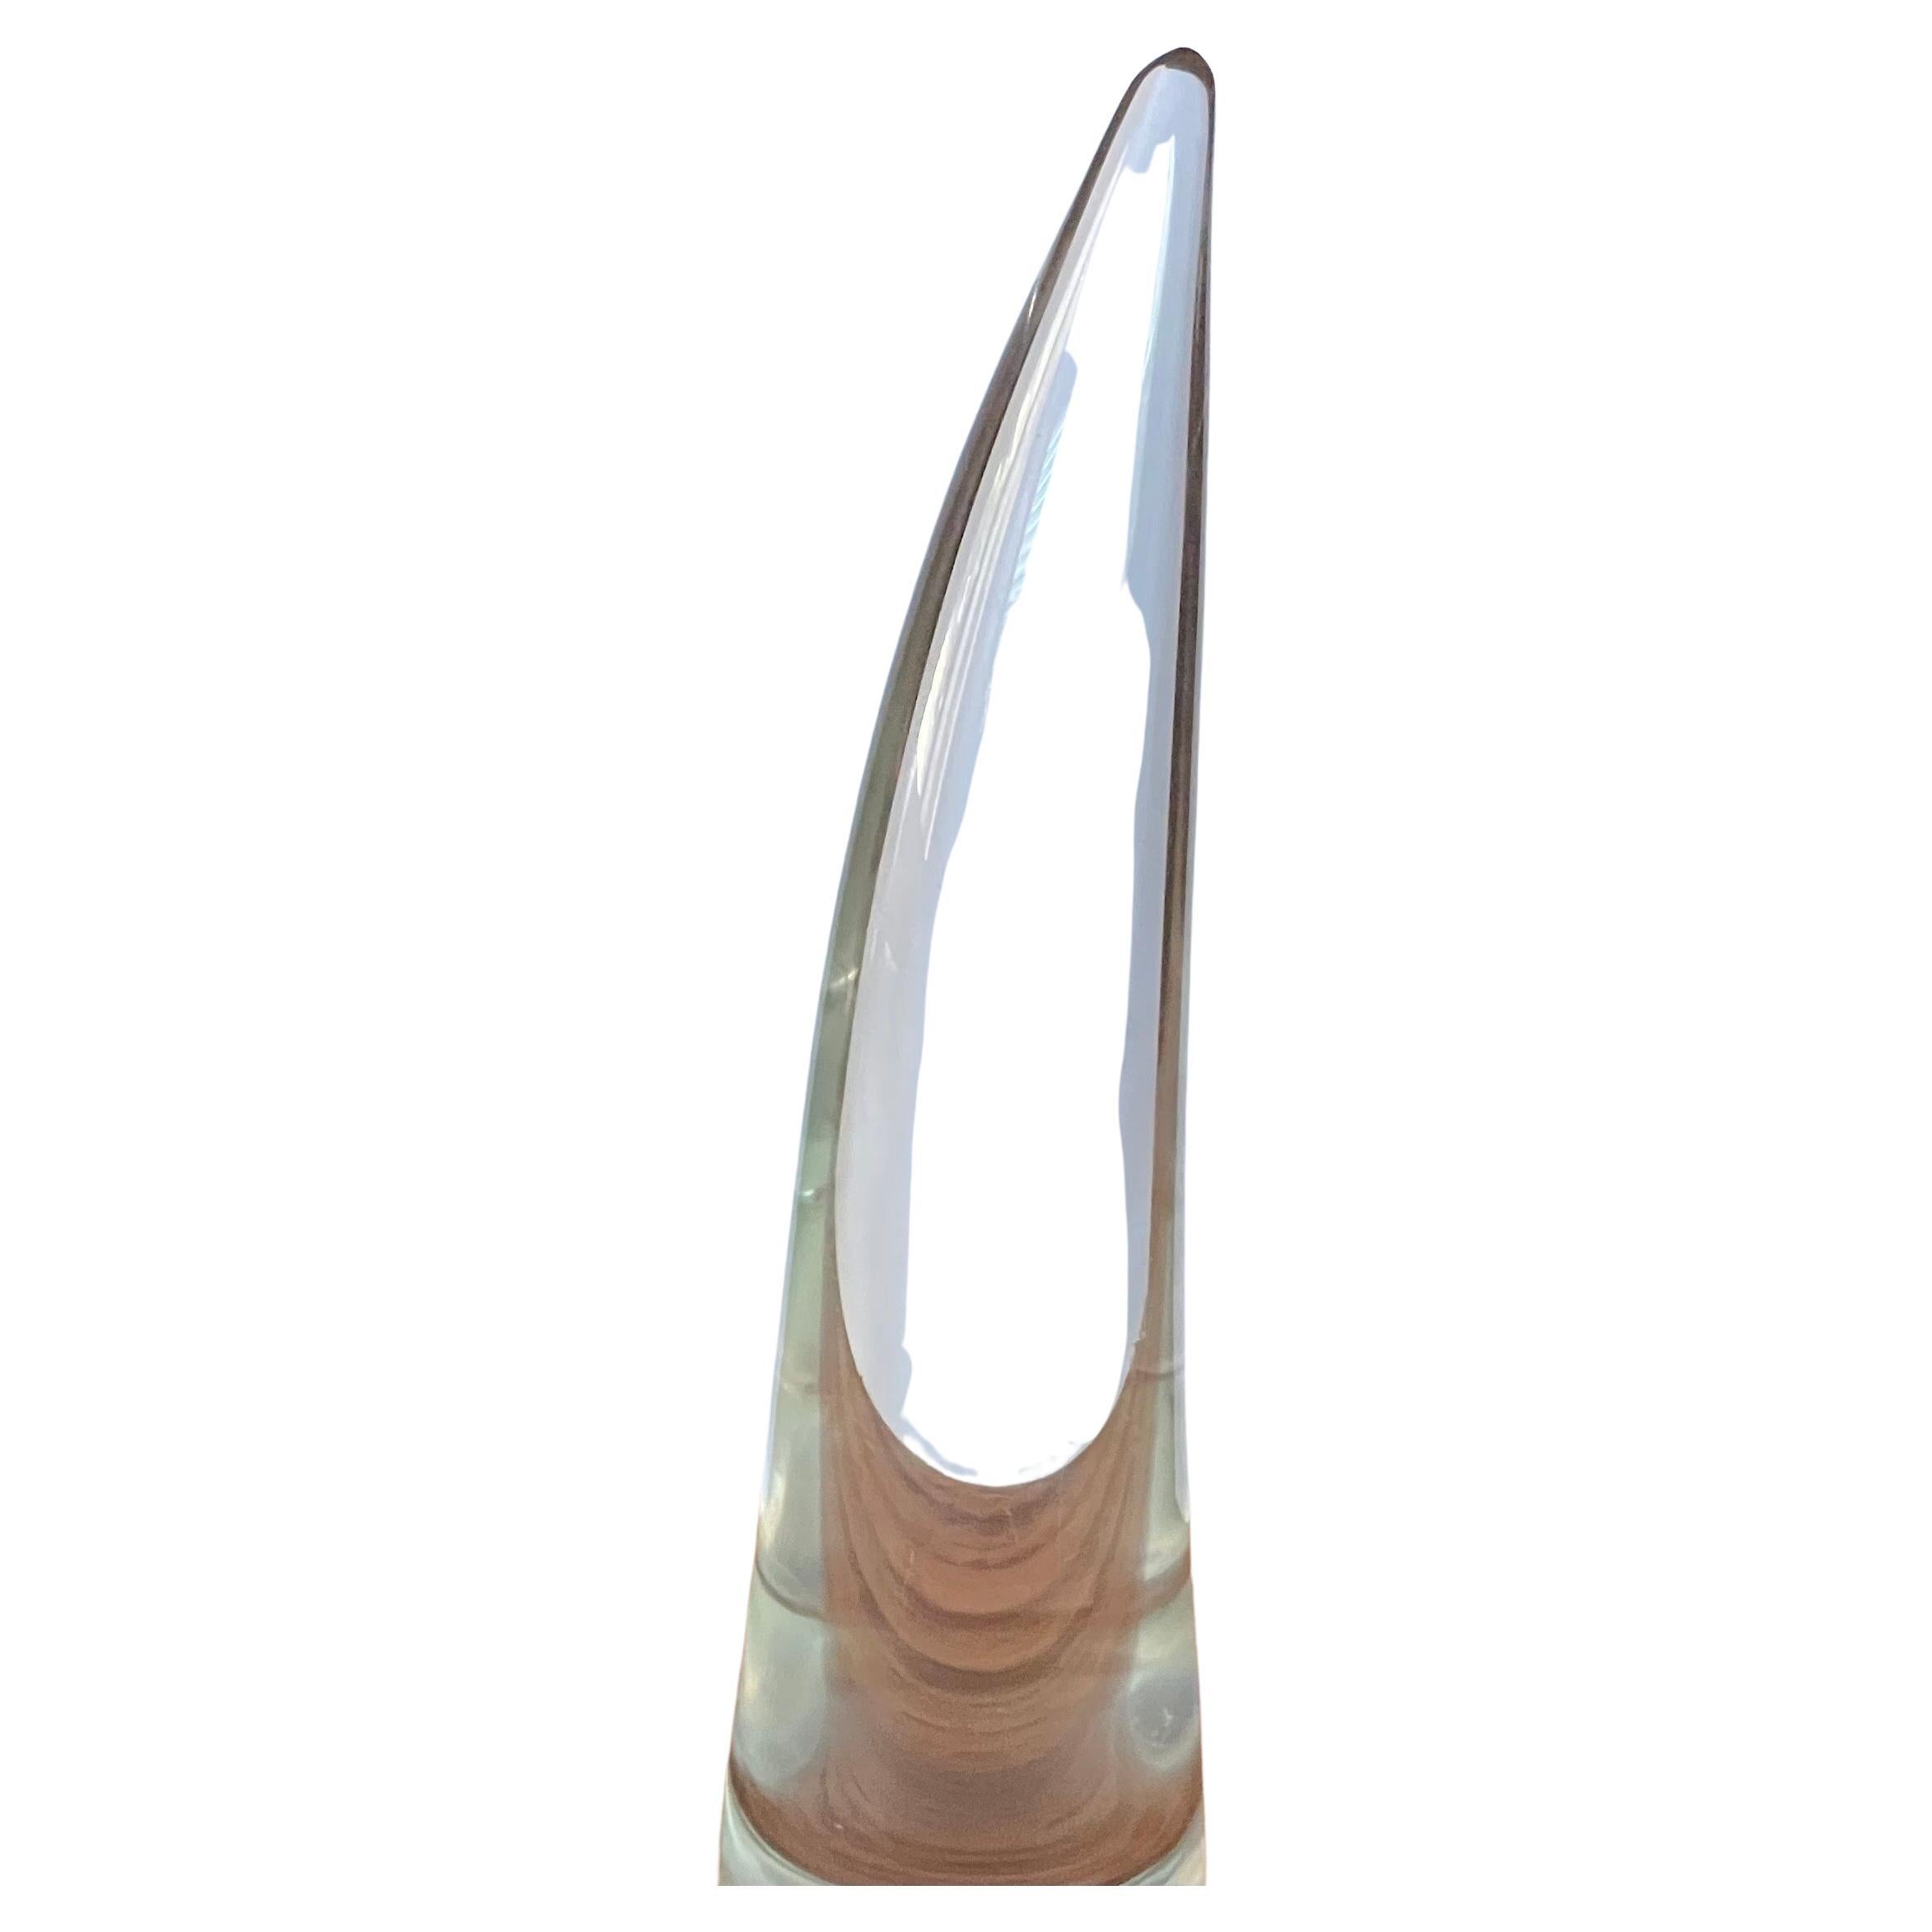 Magnifique grande corne en verre d'art par Licio Zanetti pour Murano Glass Studios, vers les années 1970. La Horn mesure 3 